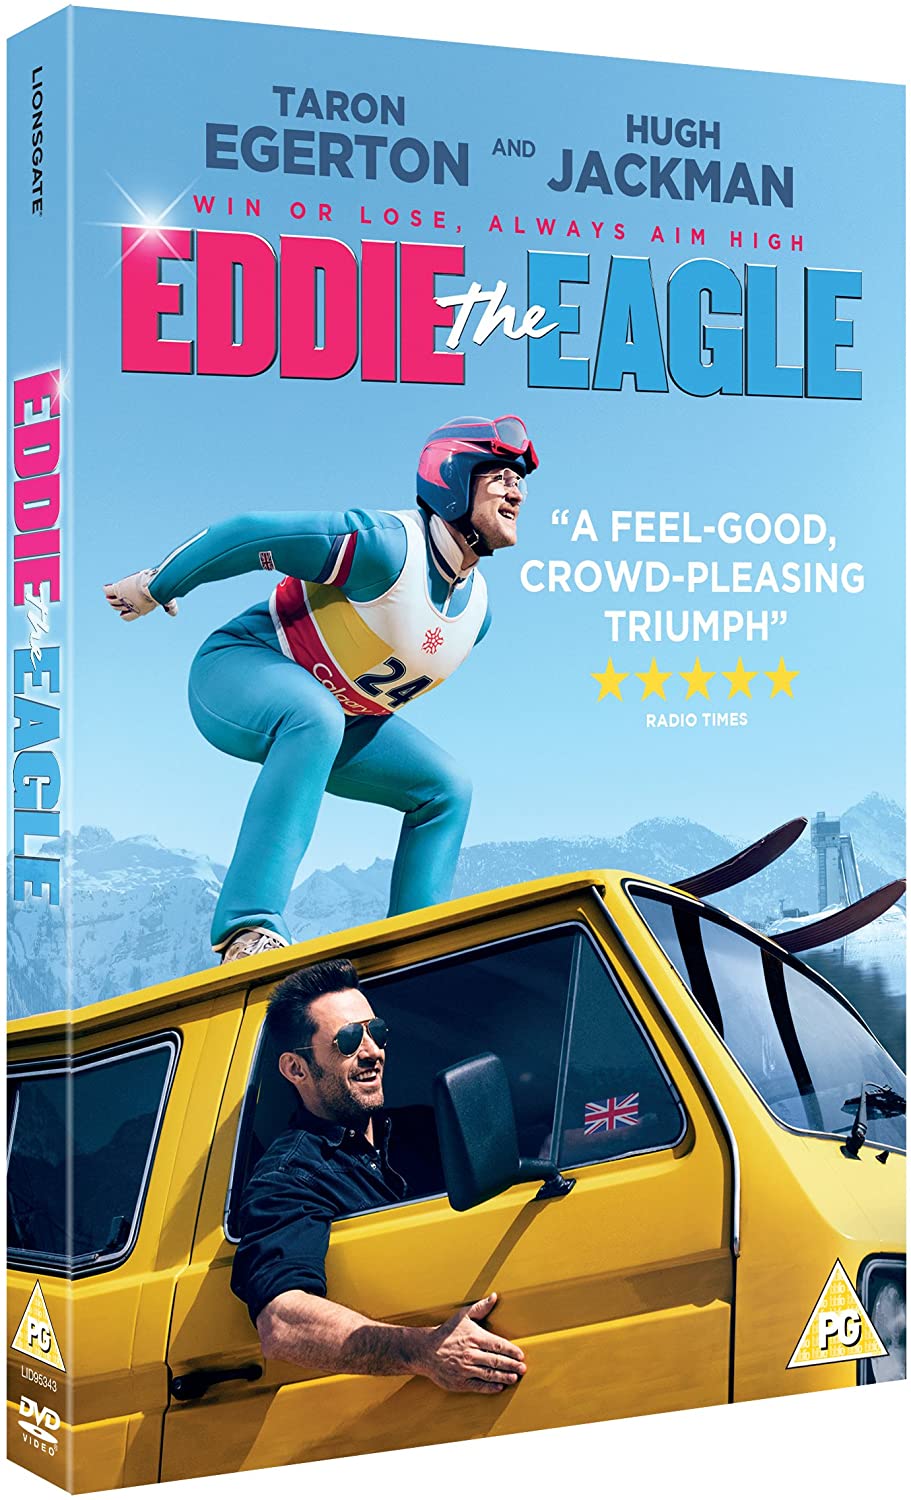 Eddie de adelaar [DVD] [2016]